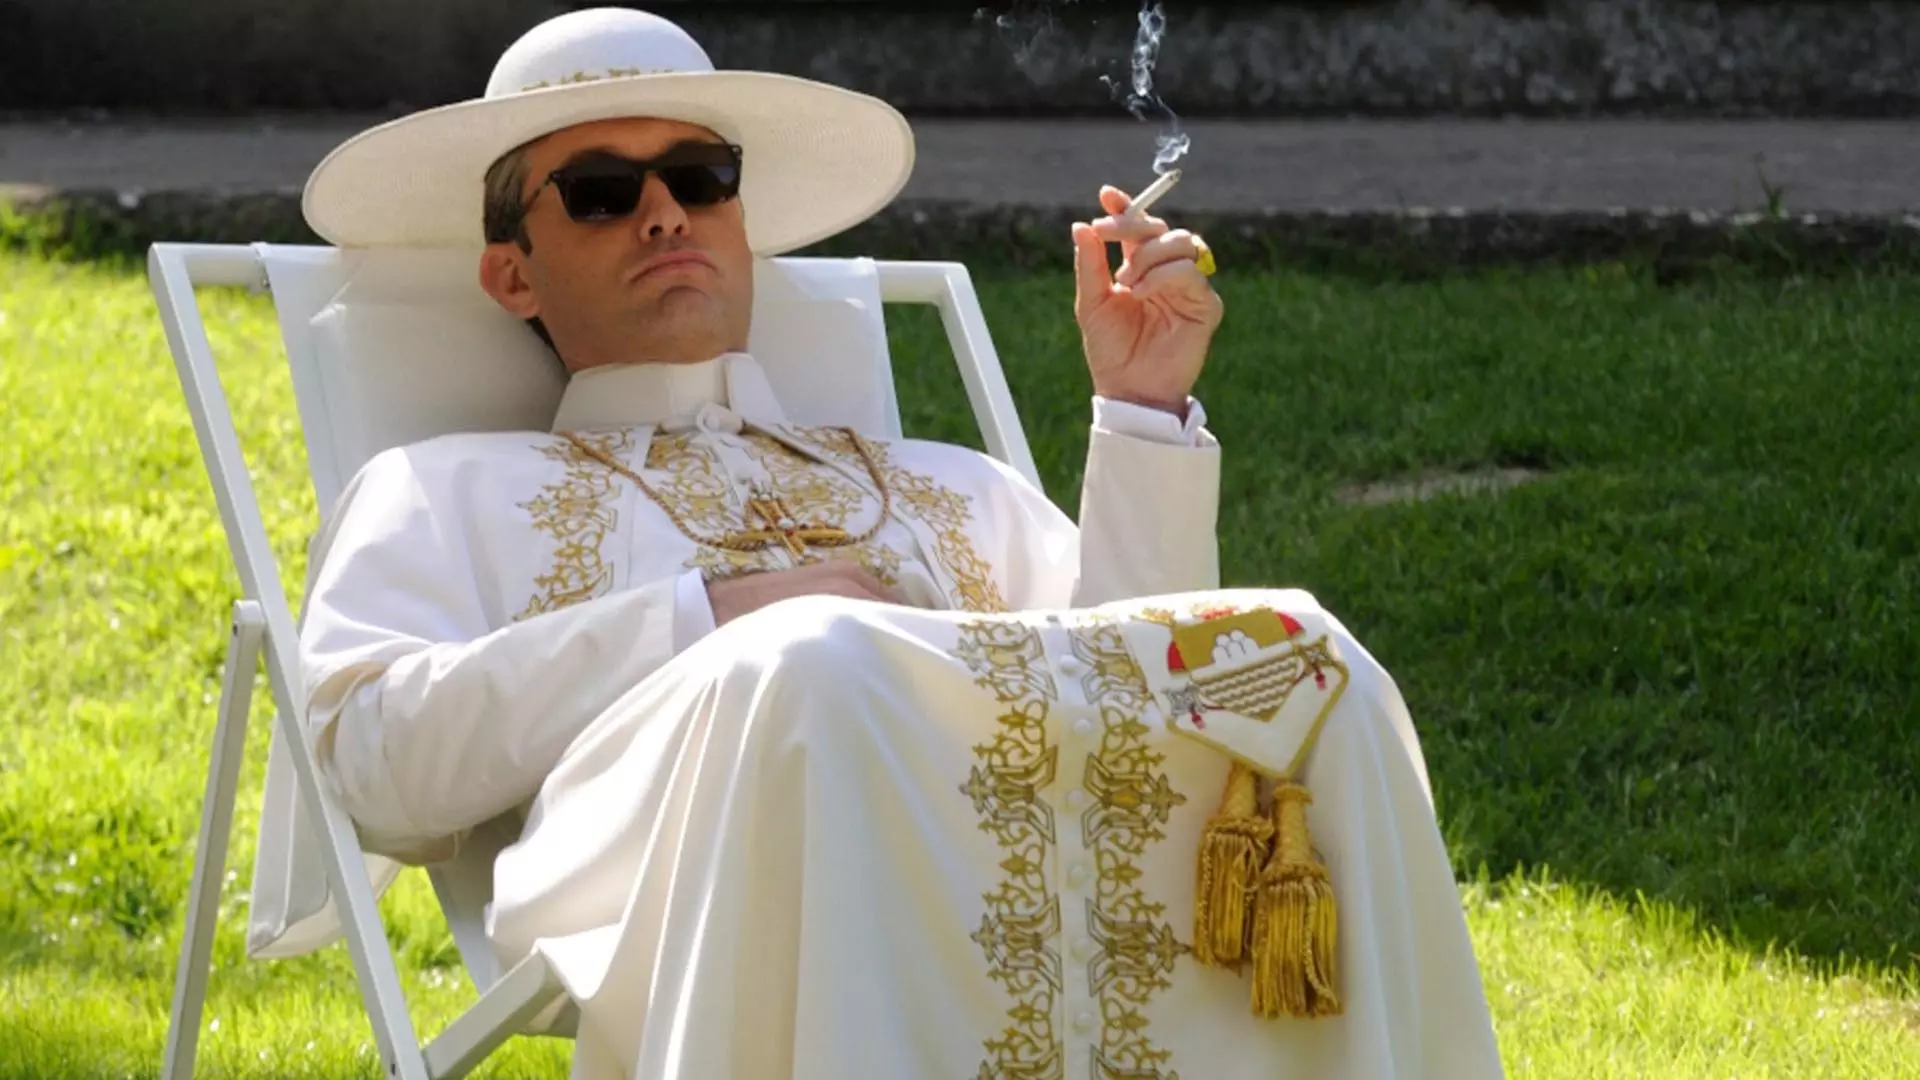 جود لاو در حال سیگار کشیدن در مینی سریال The Young Pope